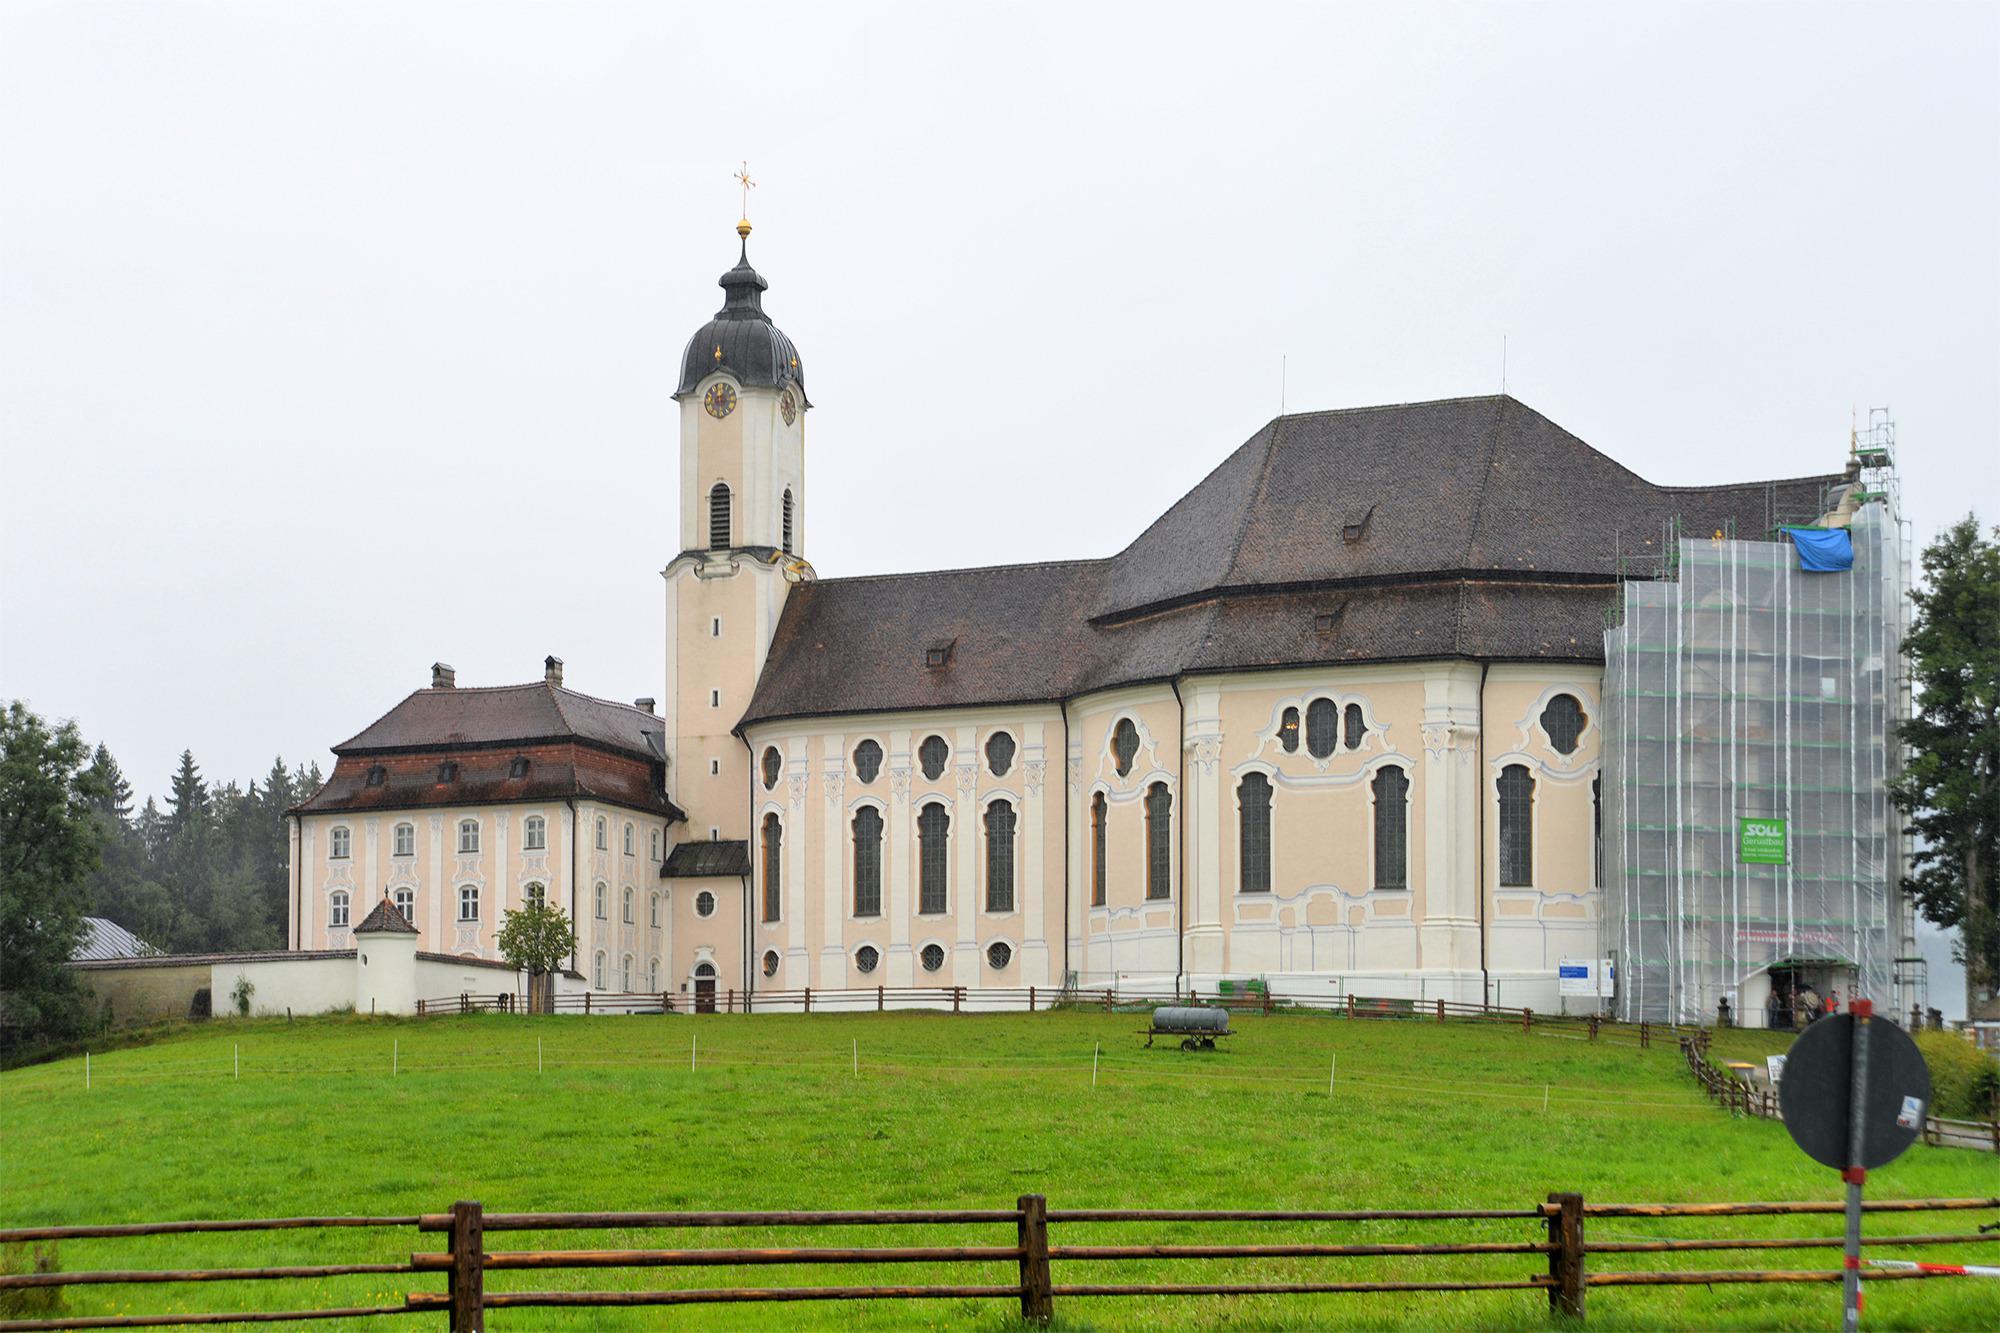 Wies Church, Wies, Germany